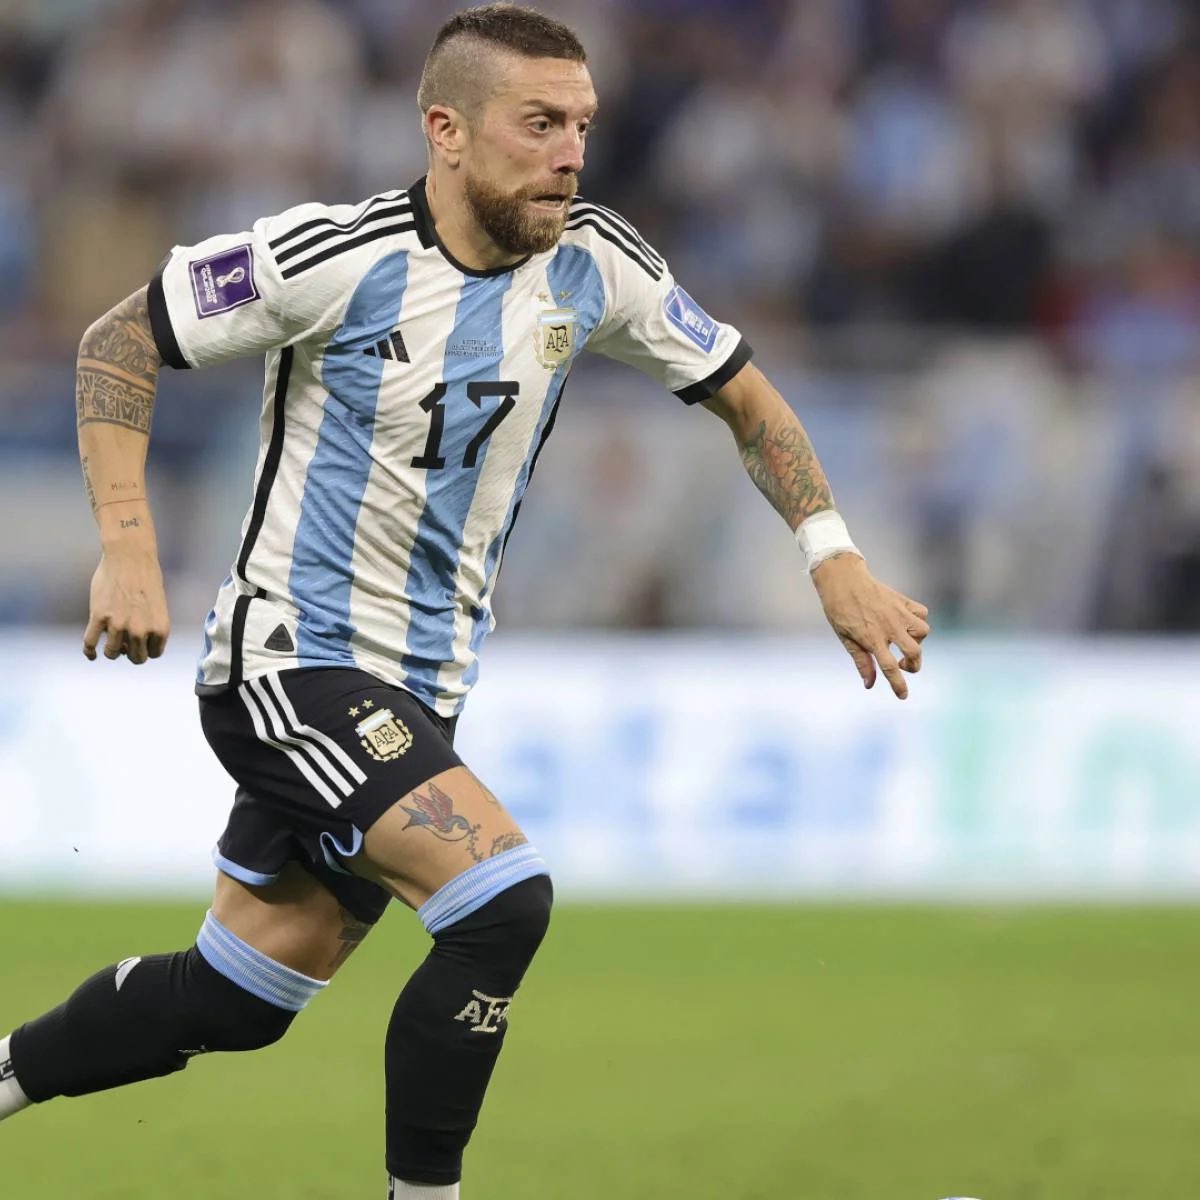 🚨 ULTIMA HORA: 6 jugadores de la selección de Argentina en el Mundial de Qatar 2022 han dado POSITIVO en DOPAJE, de los cuales sólo se conoce 1, que es Papu Gómez.